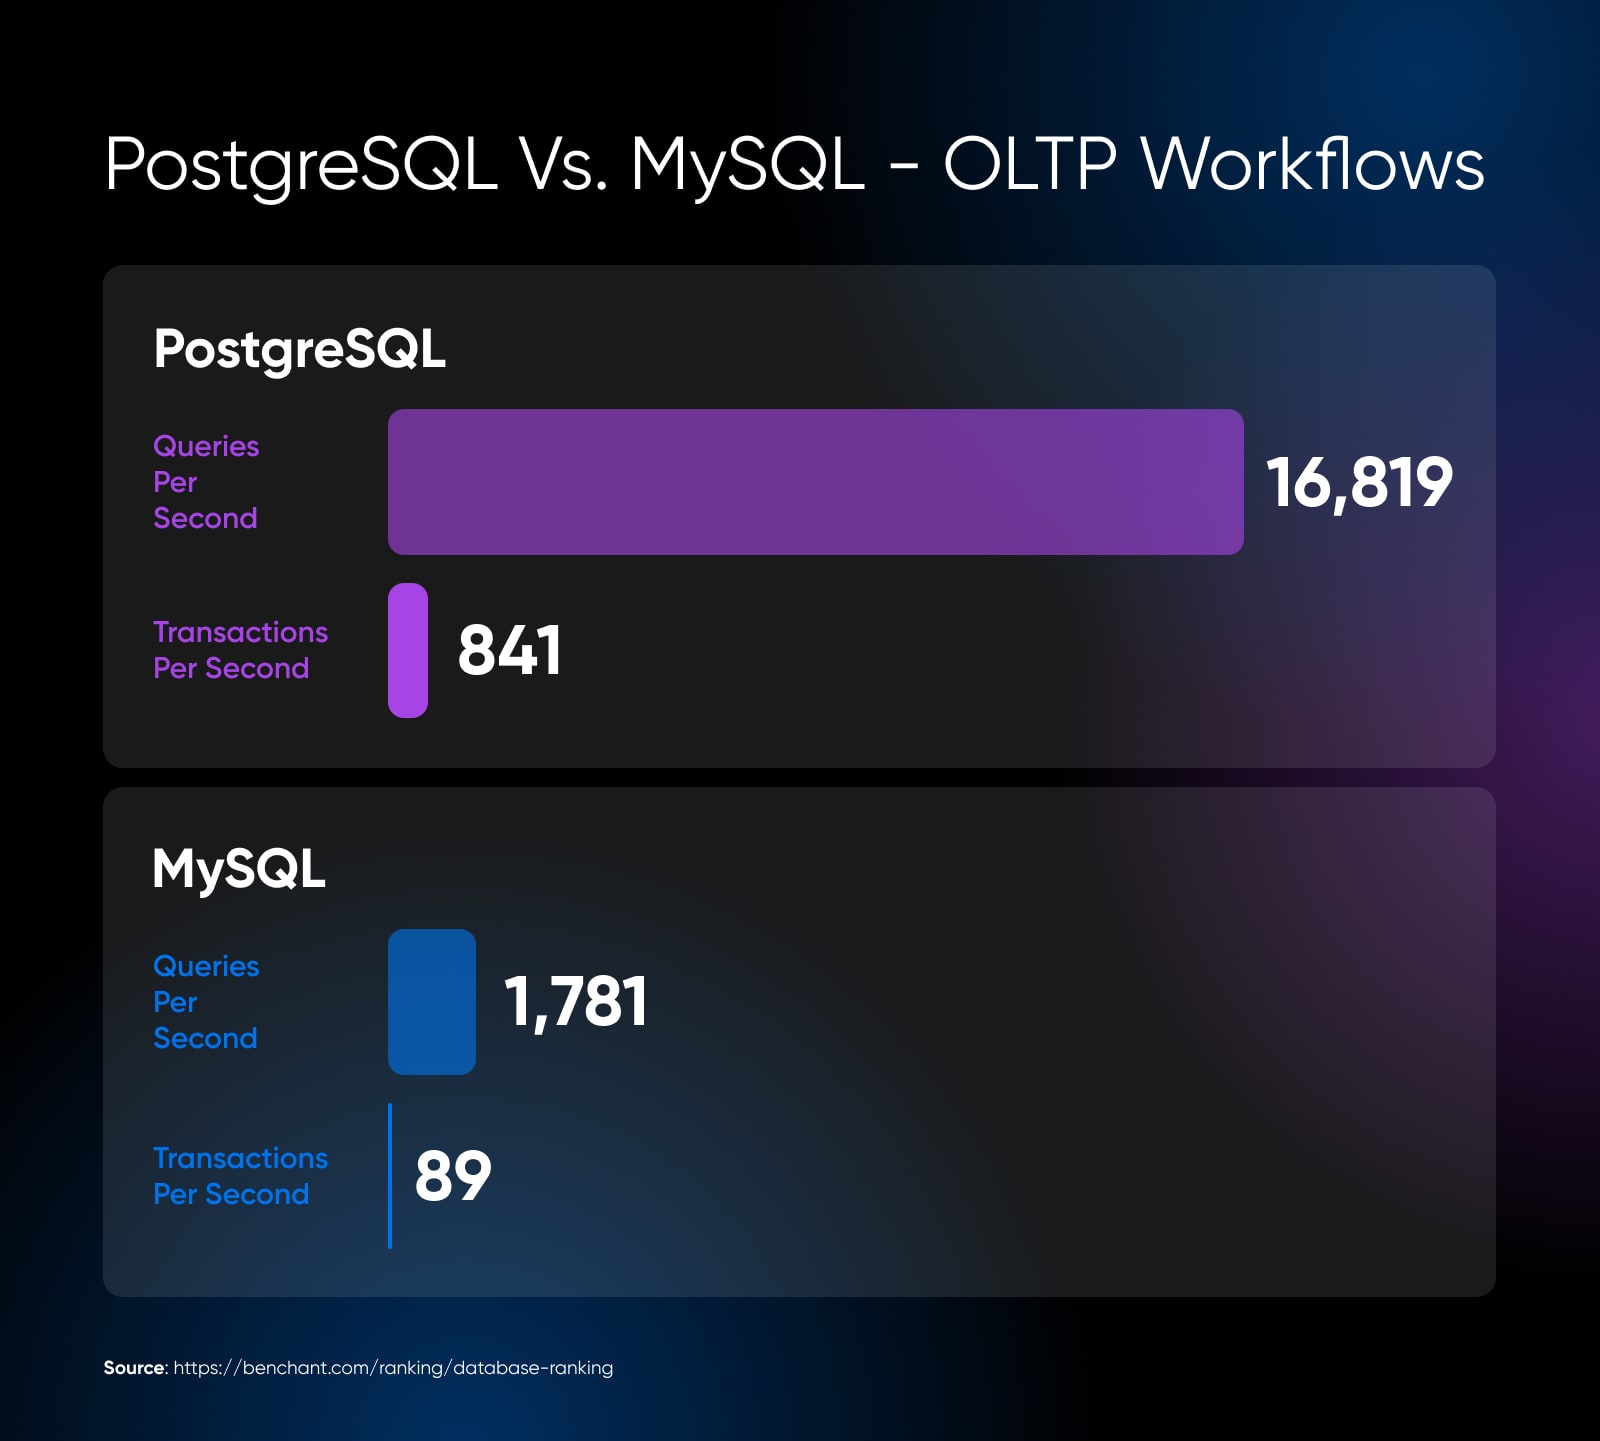 PostgreSQL Vs. MySQL workflows where postgresql has 16,819 queries per section to mysql 1,781